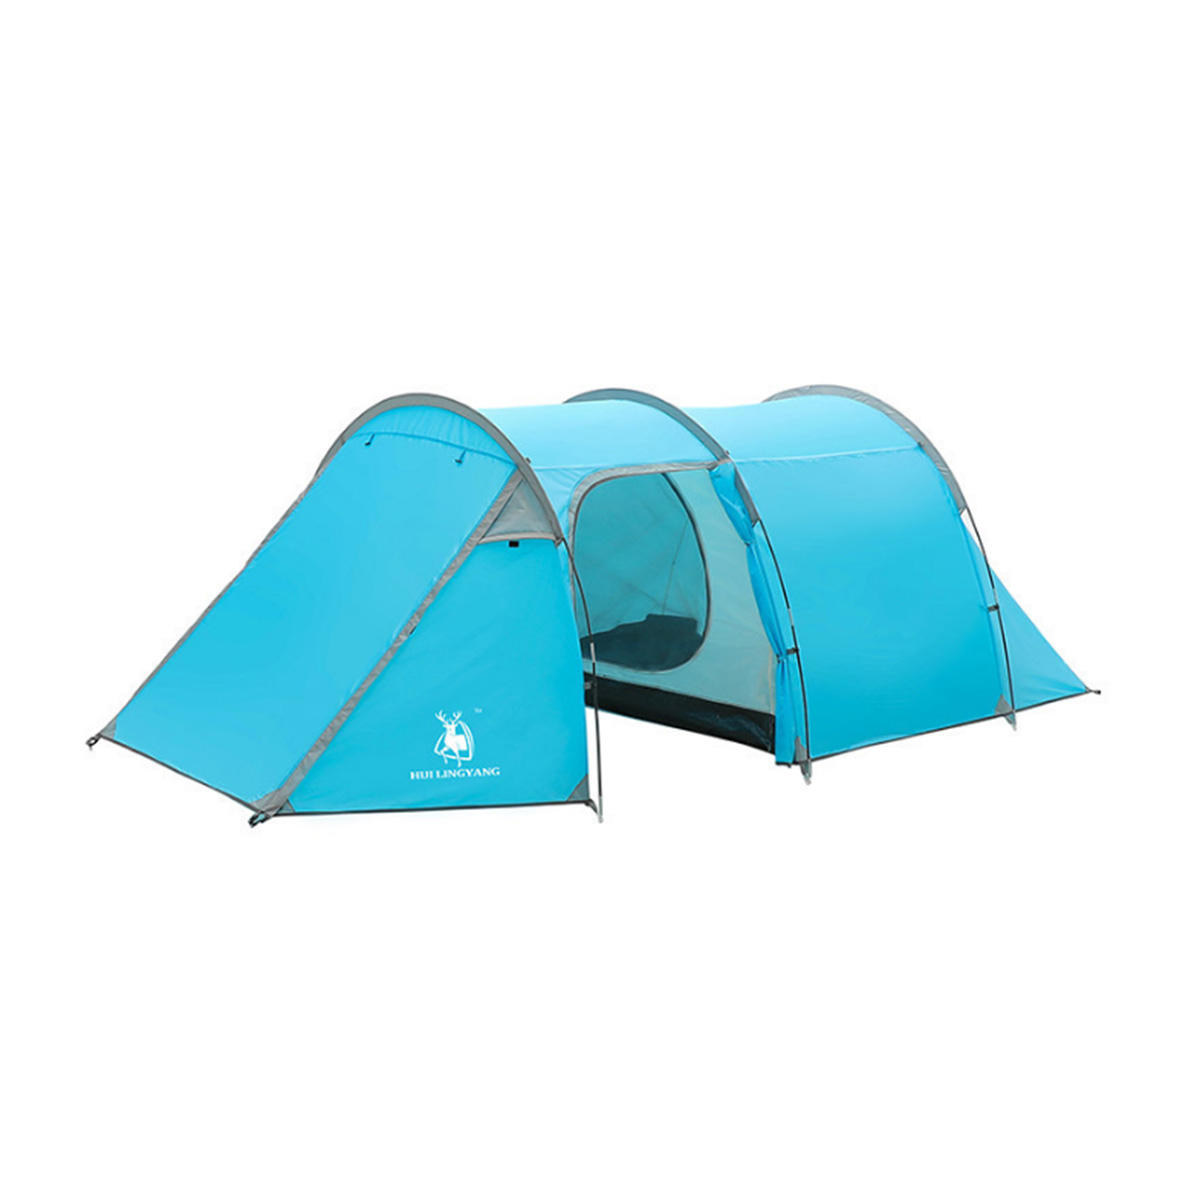 4-5人用キャンプテント、ビーチテント、大型ハイキングテント、防水サンシェードオーニング。